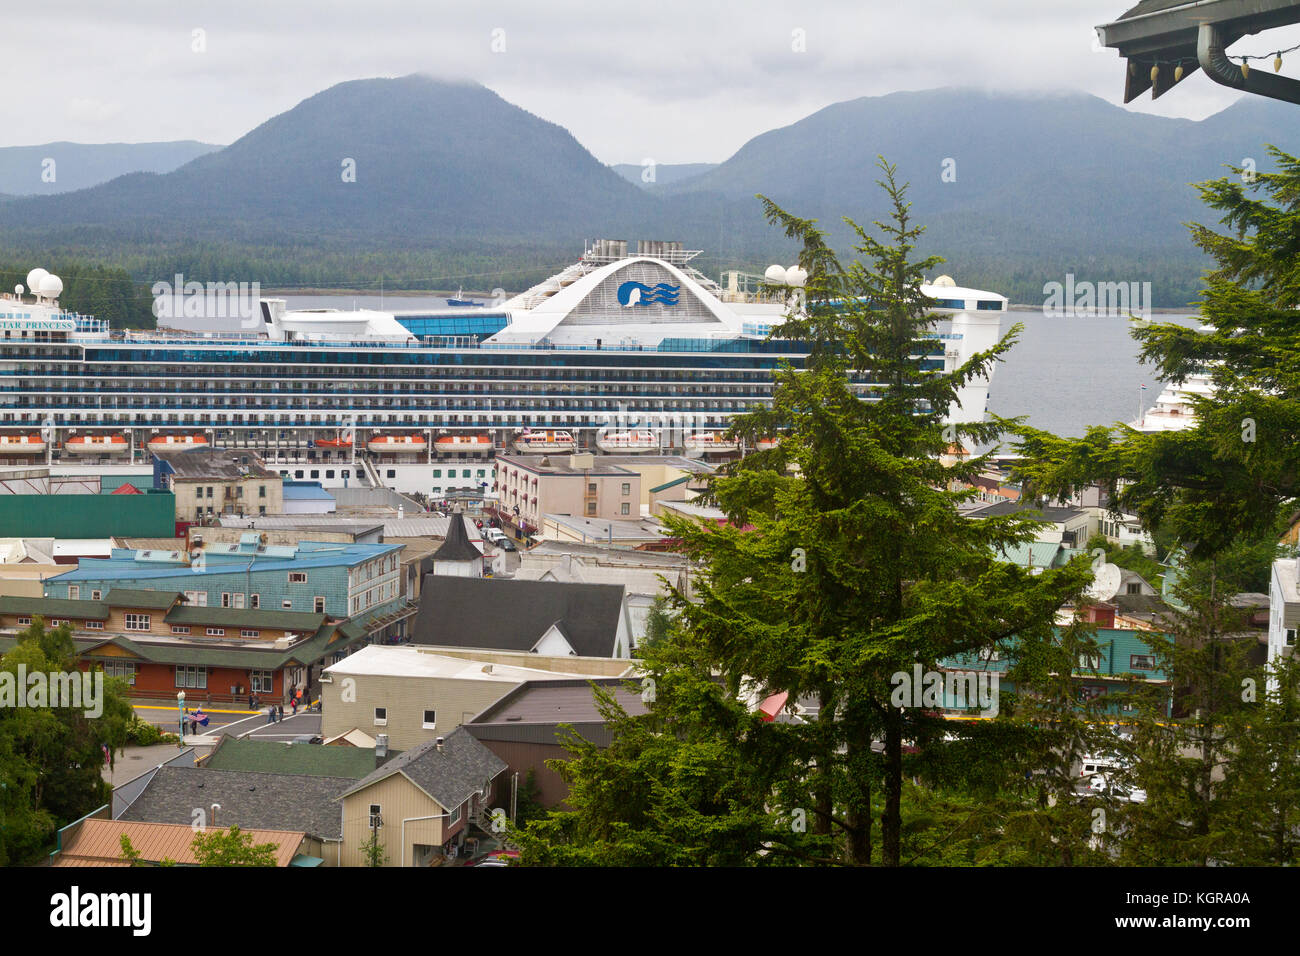 Einen erhöhten Blick auf die Innenstadt von Ketchikan, Alaska mit dem Kreuzfahrtschiff Star Princess im Hintergrund. Stockfoto